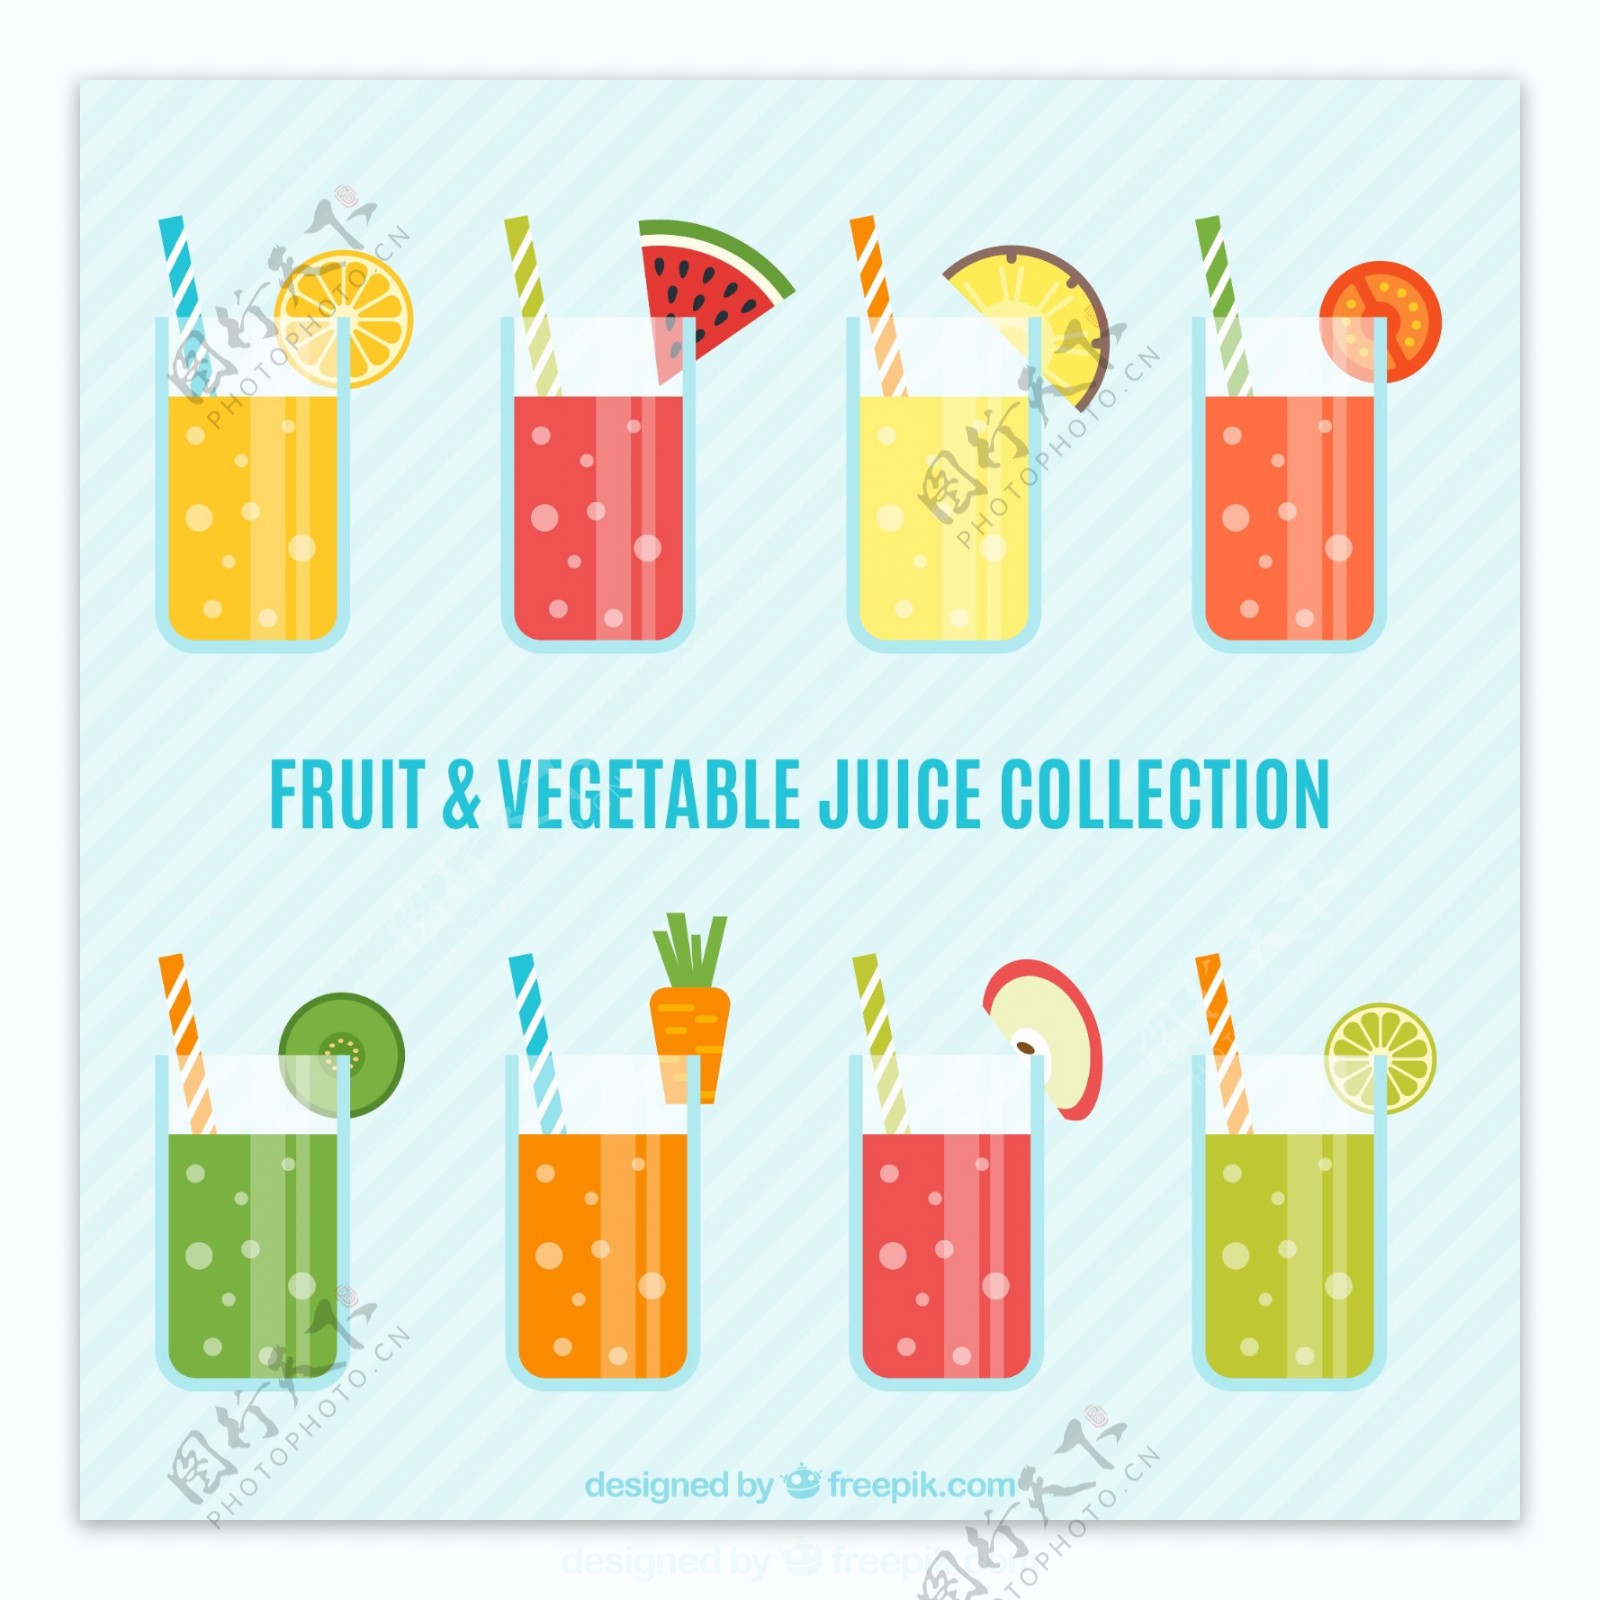 健康的水果和蔬菜汁